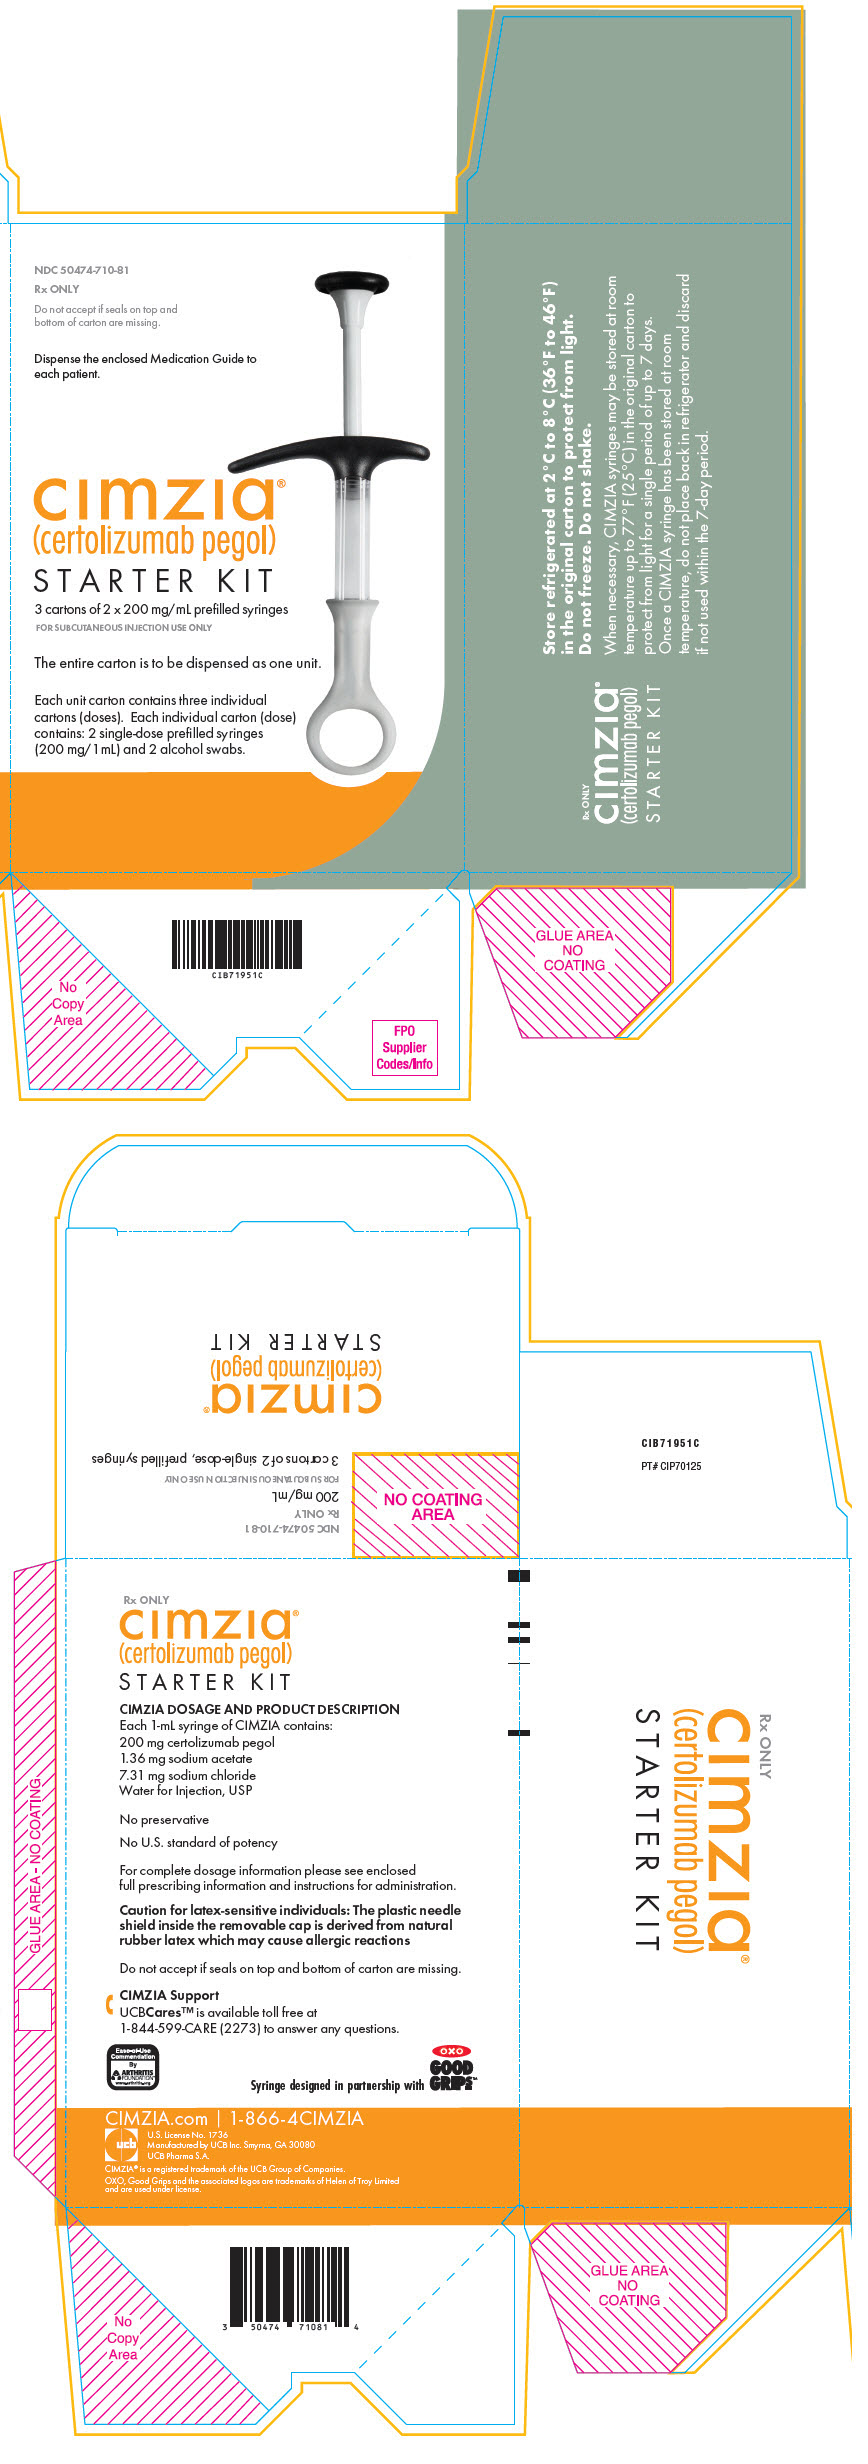 PRINCIPAL DISPLAY PANEL- 1 mL Syringe Carton Box